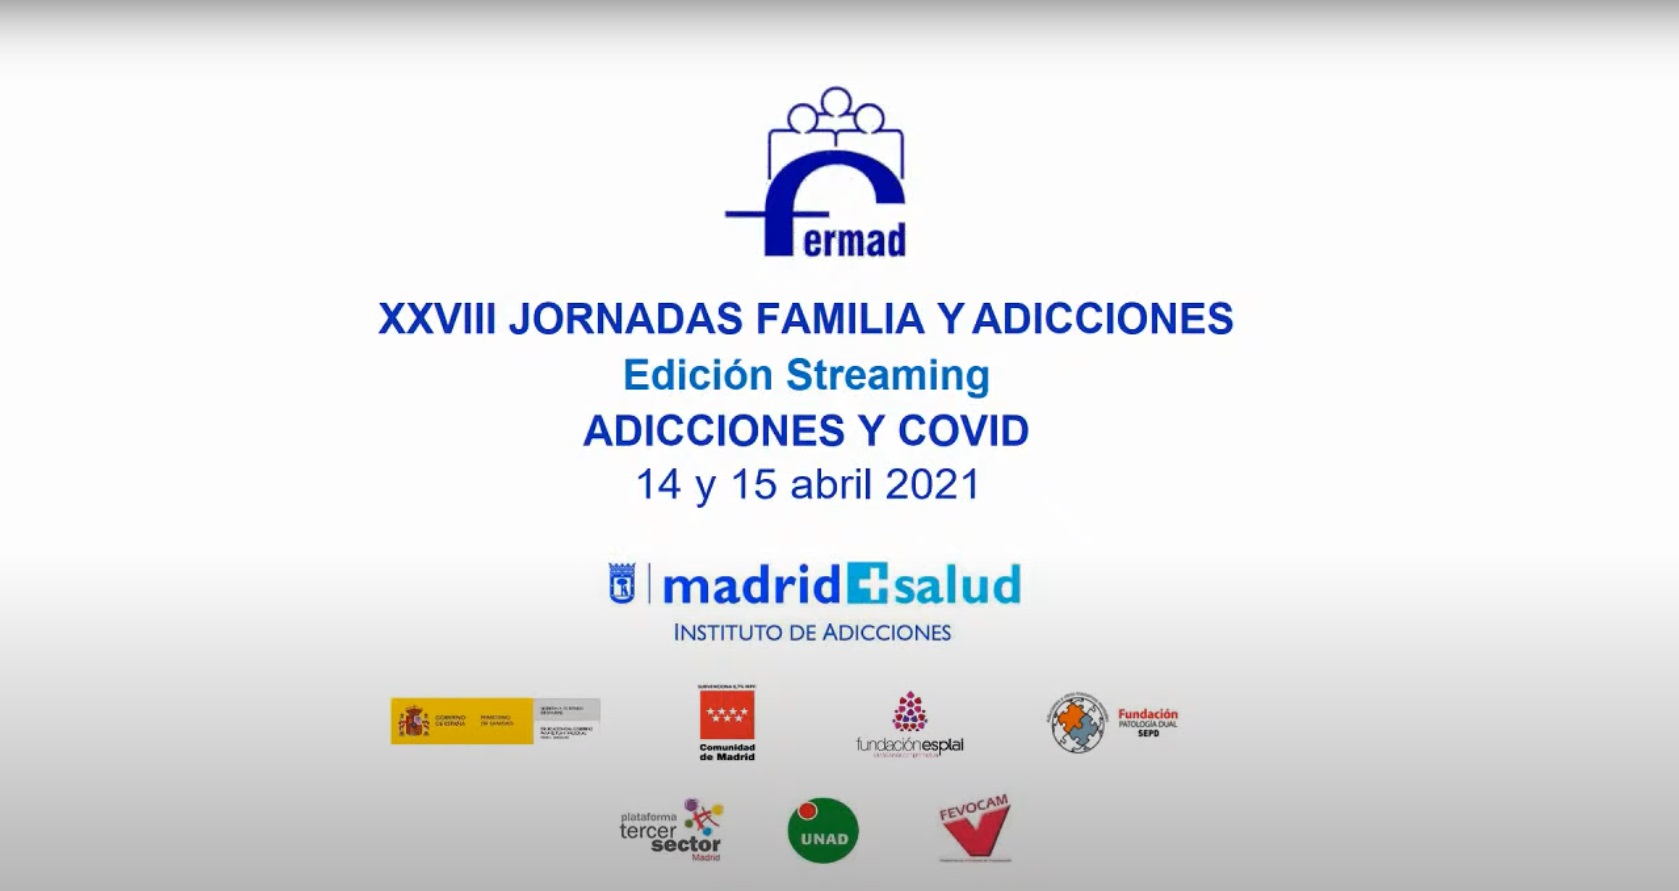 XXVIII JORNADAS FAMILIA Y ADICCIONES. Adicciones y Covid